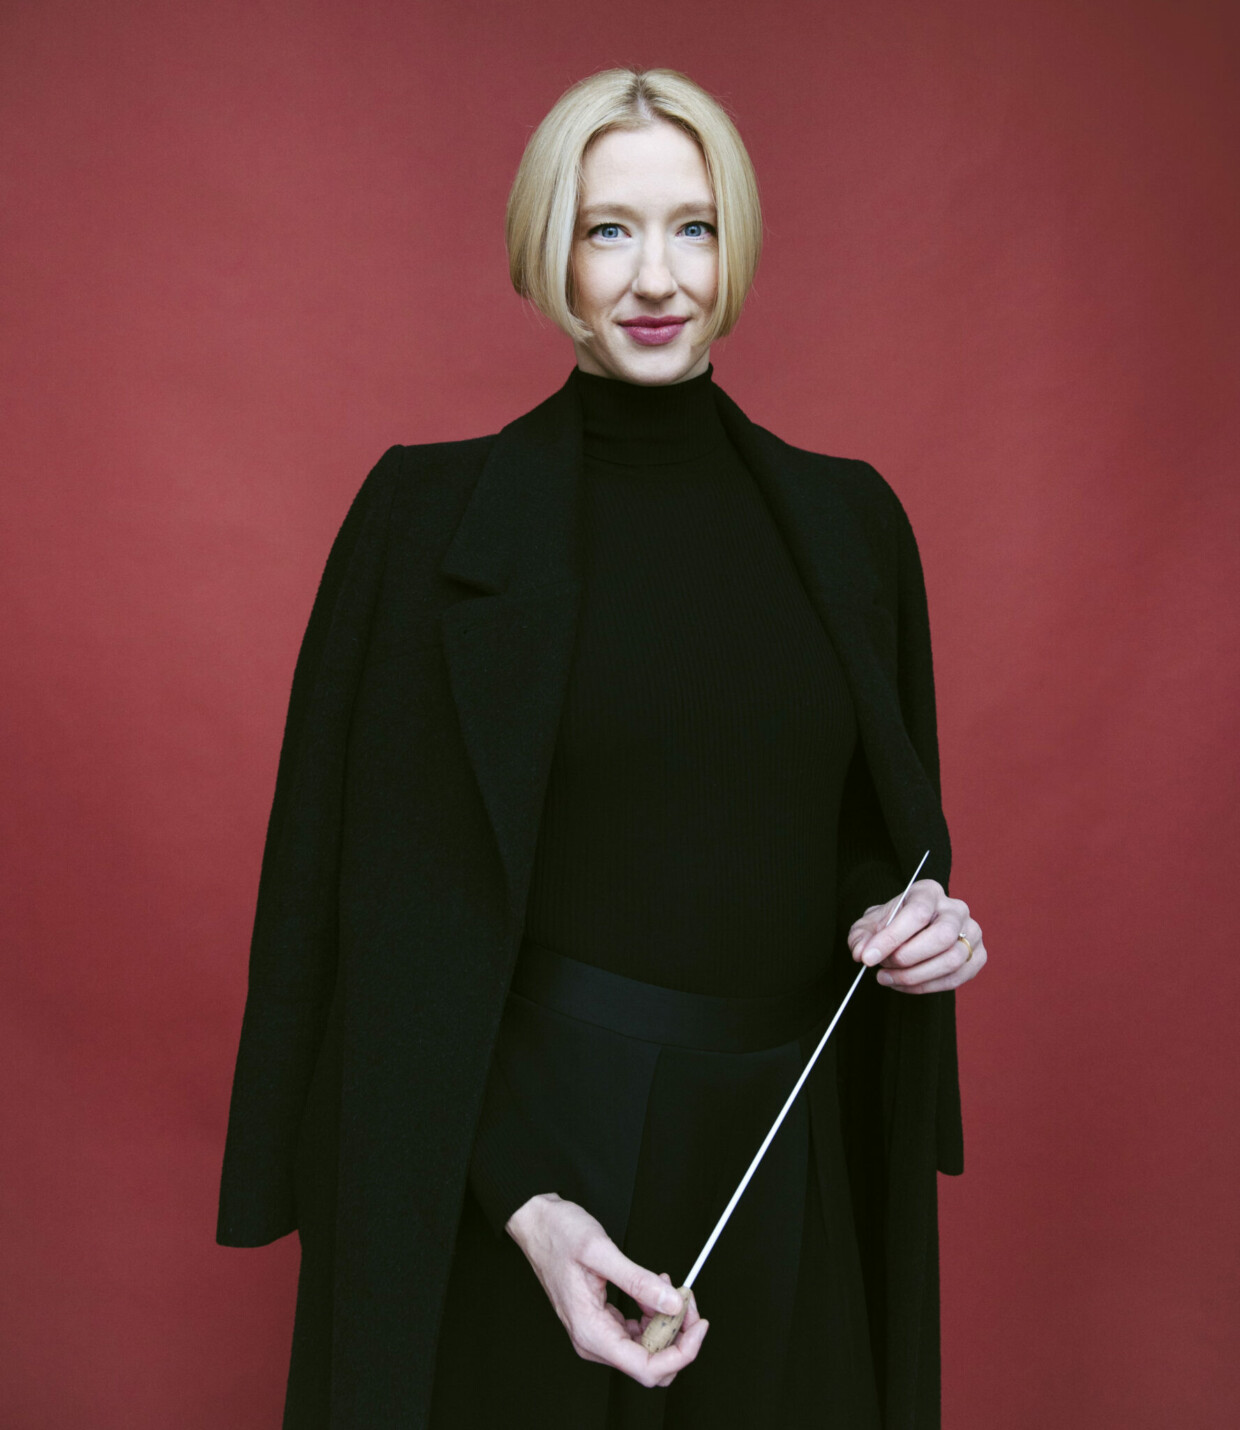 Neue Chefdirigentin: Joana Mallwitz